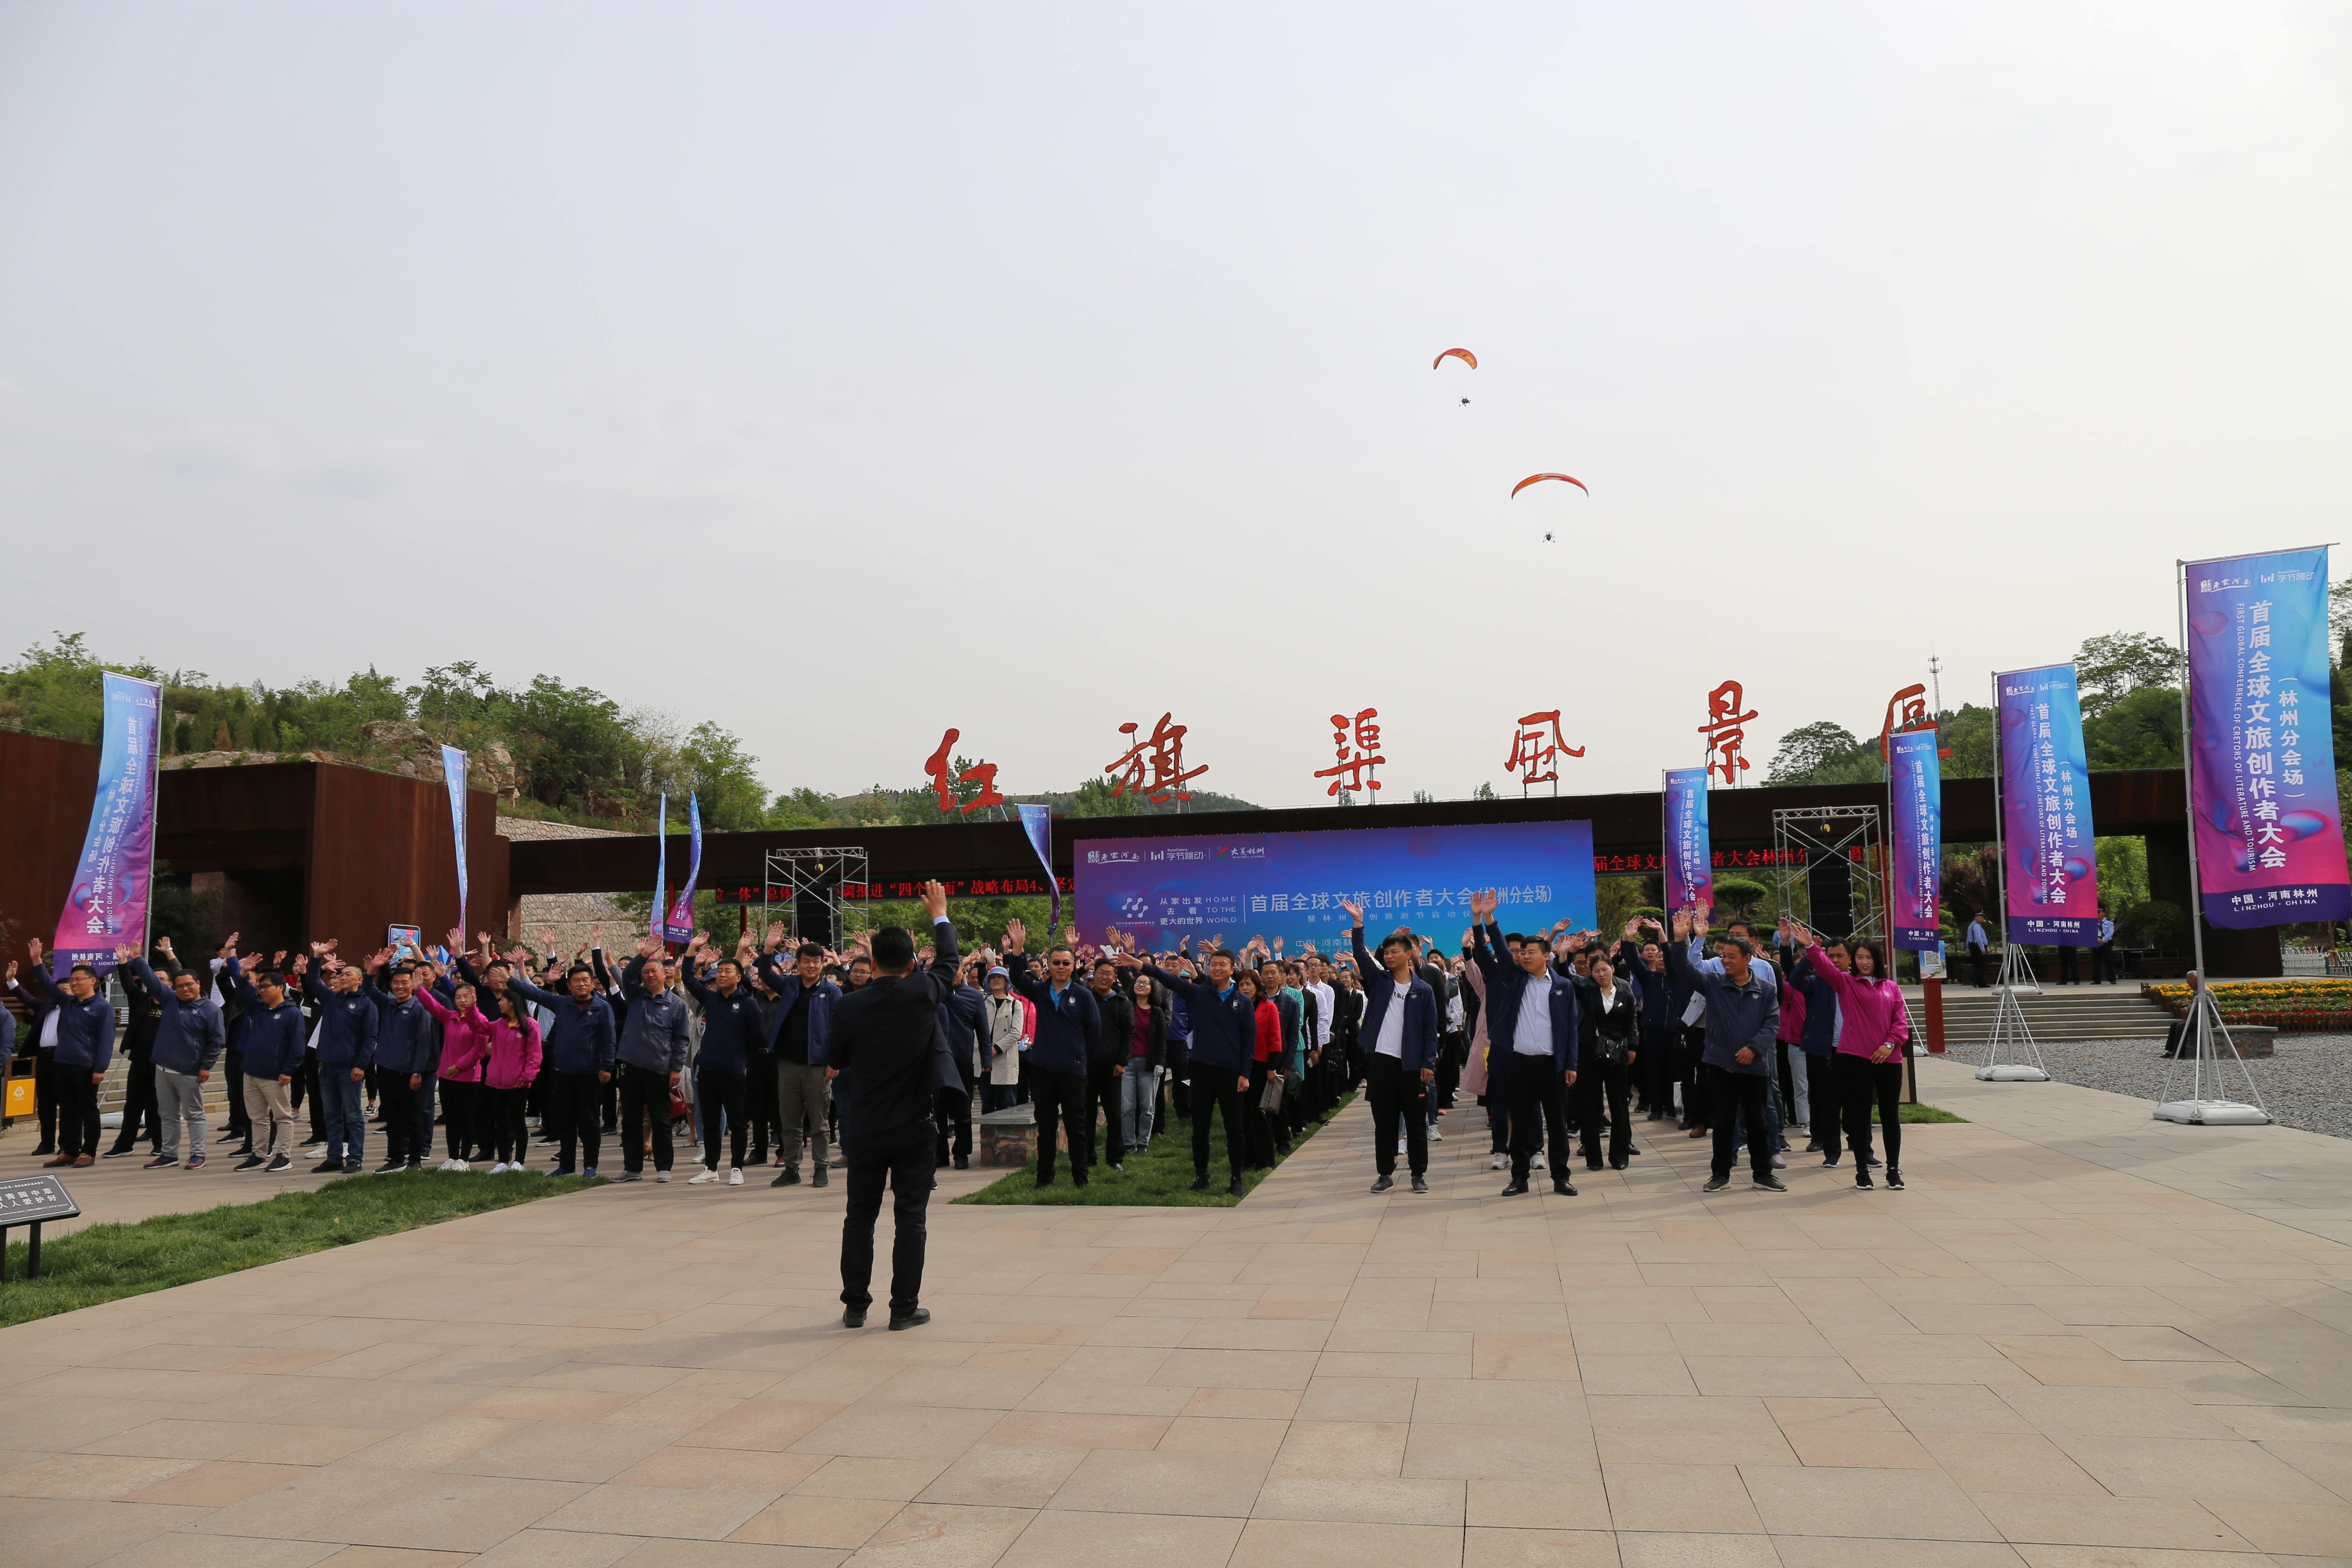 世界，你好，这里是河南林州——首届全球文旅创作者大会暨2019年林州文创旅游节启动